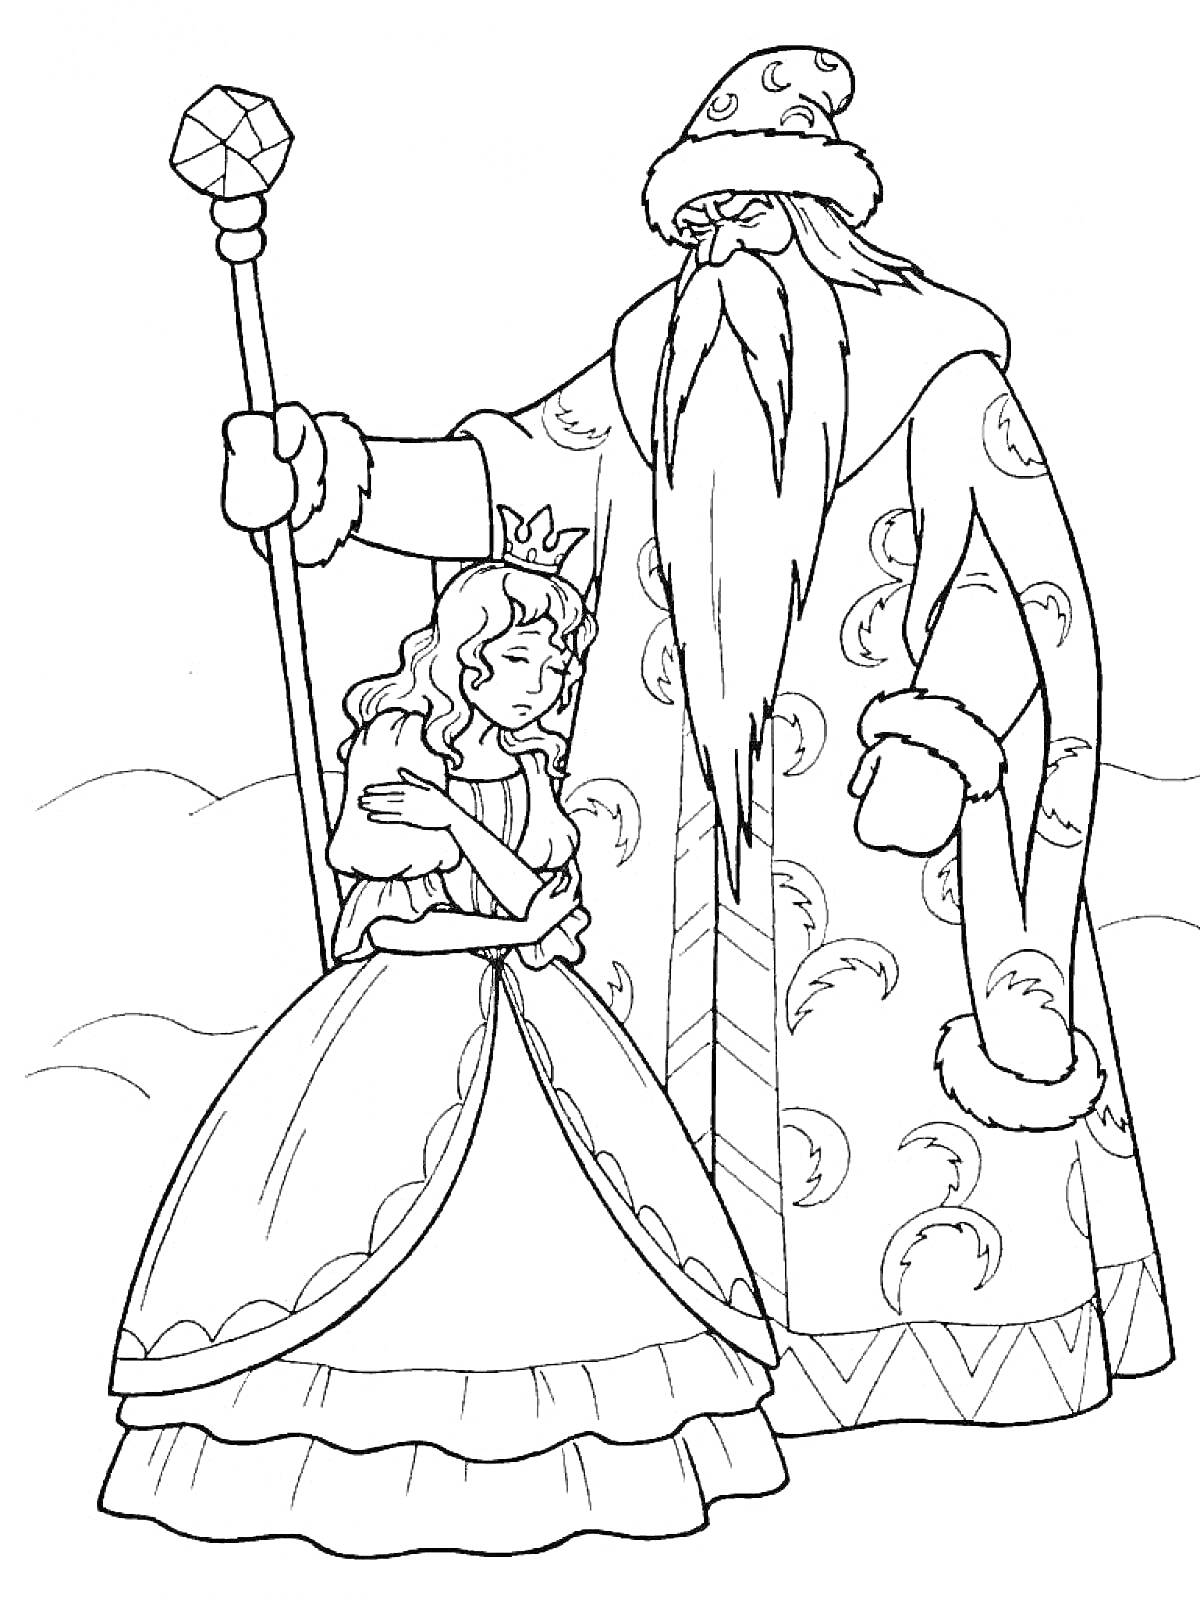 Раскраска Двенадцать месяцев: девушка в короне и старик с длинной бородой, в долгой шубе, с посохом